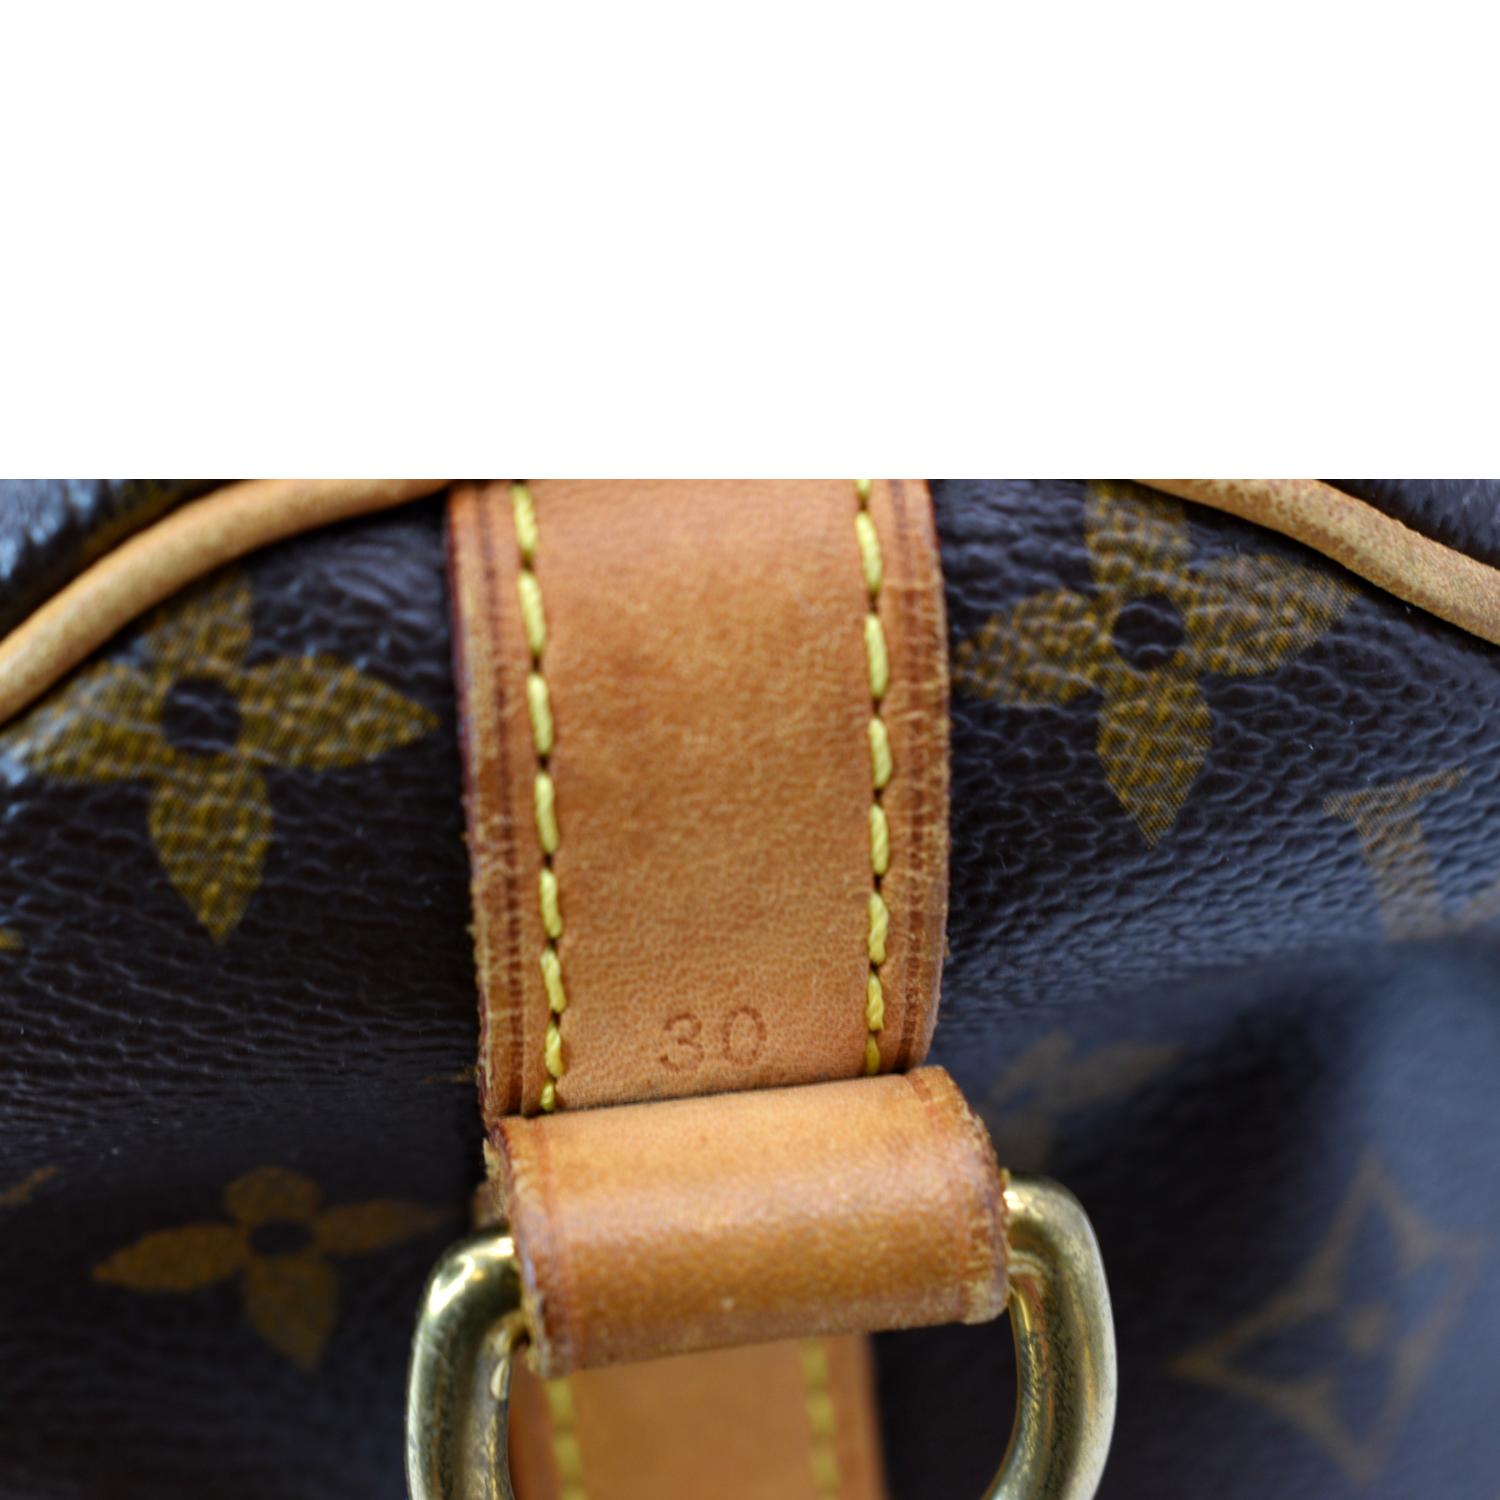 Louis Vuitton Classic Monogram Speedy 30 Bandouliere Bag